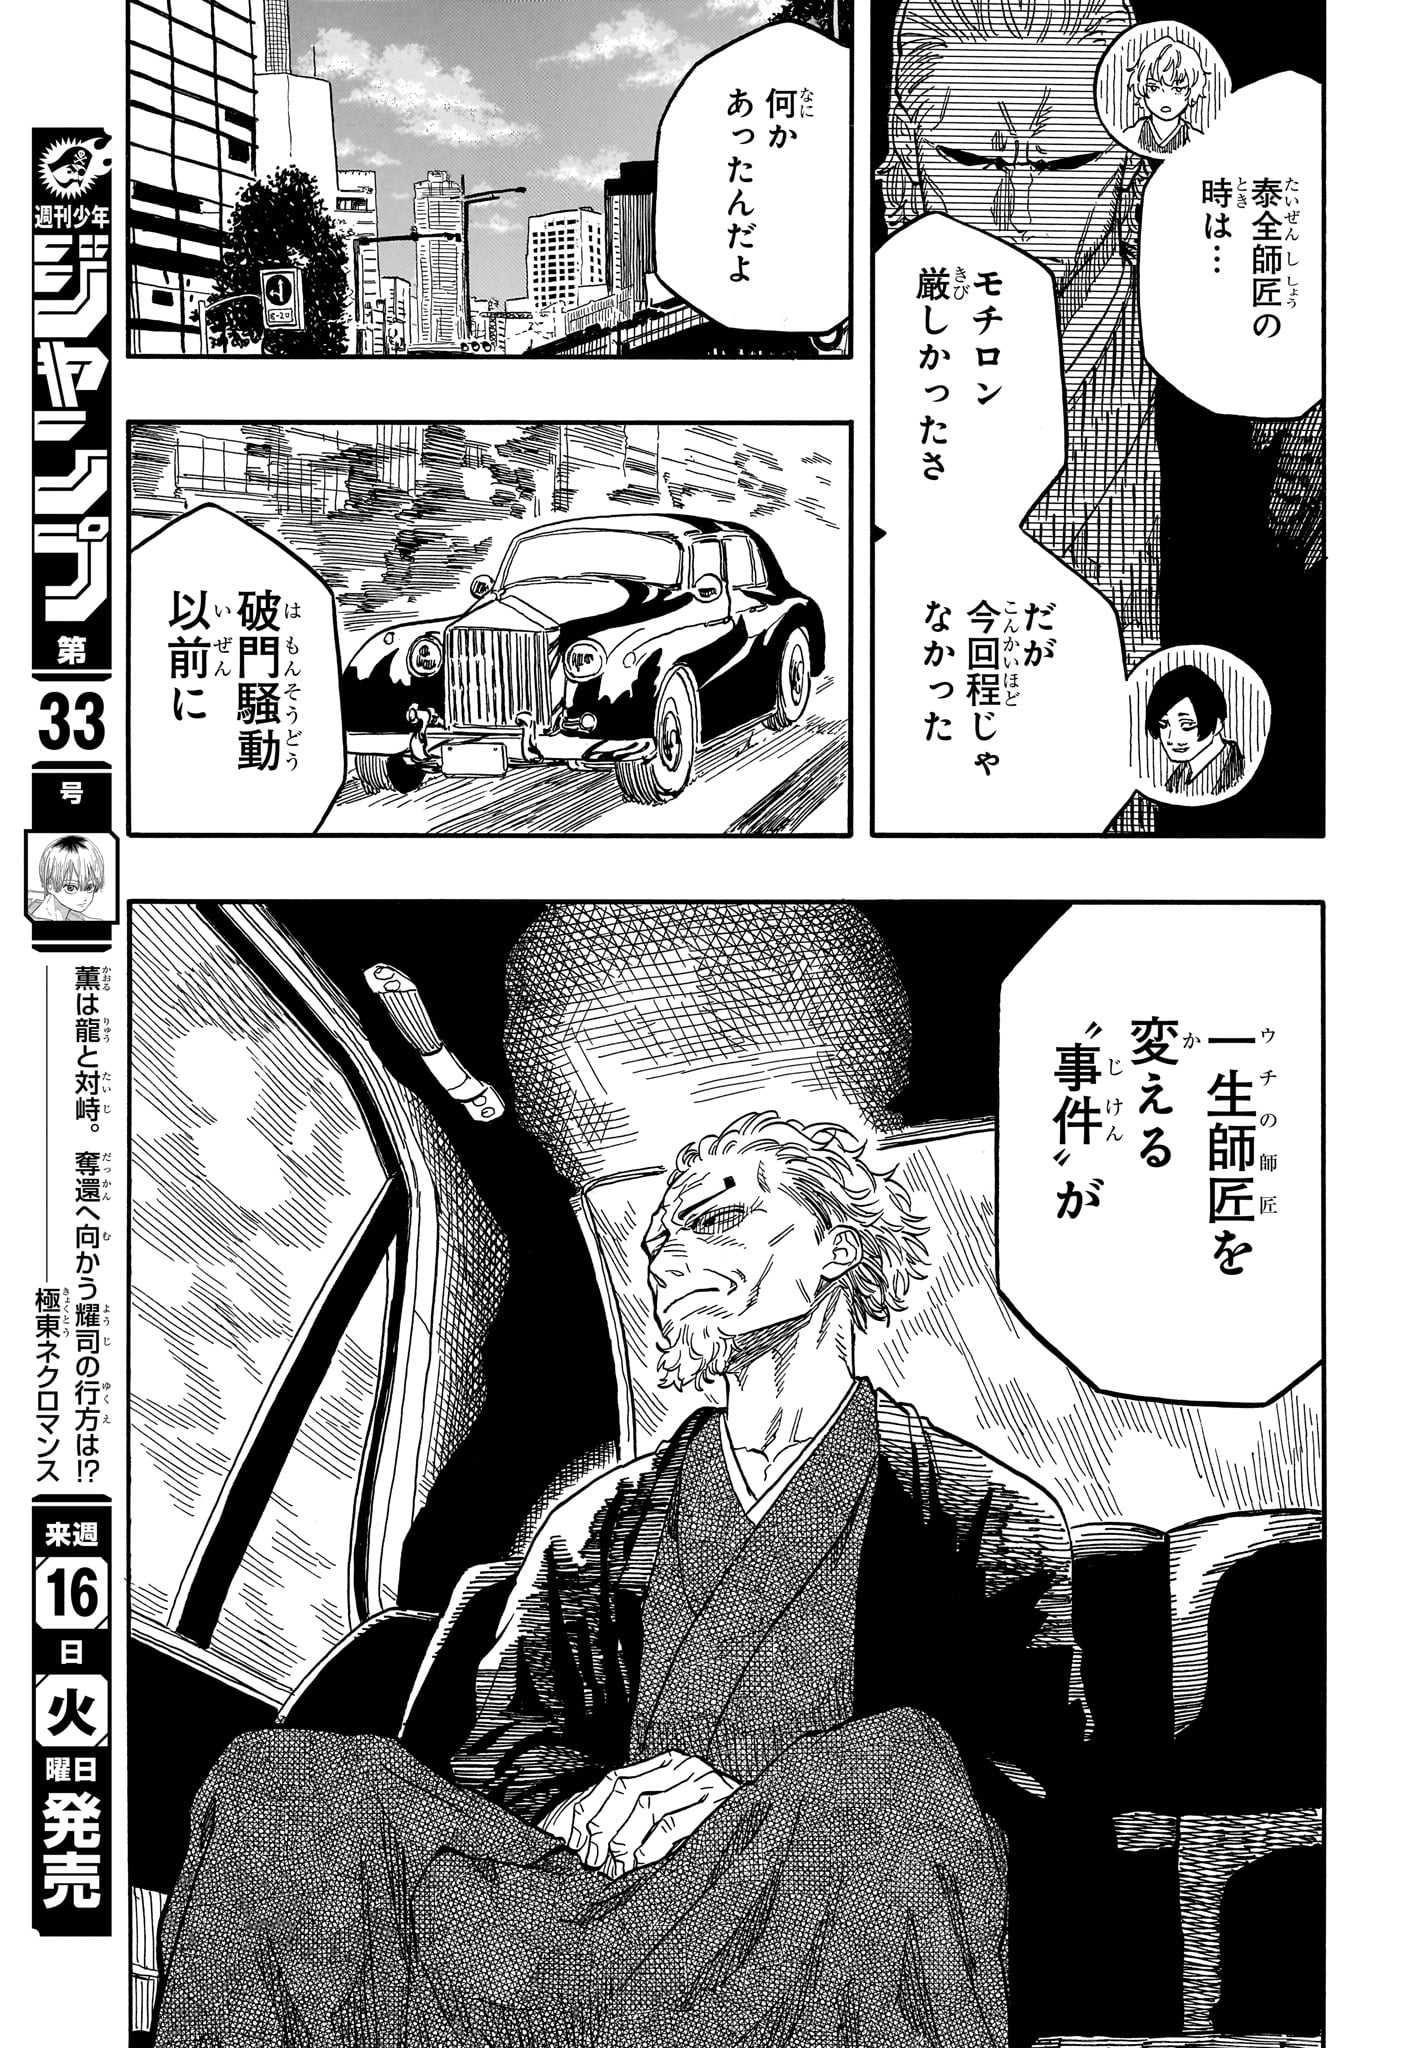 Akane-Banashi - Chapter 117 - Page 15